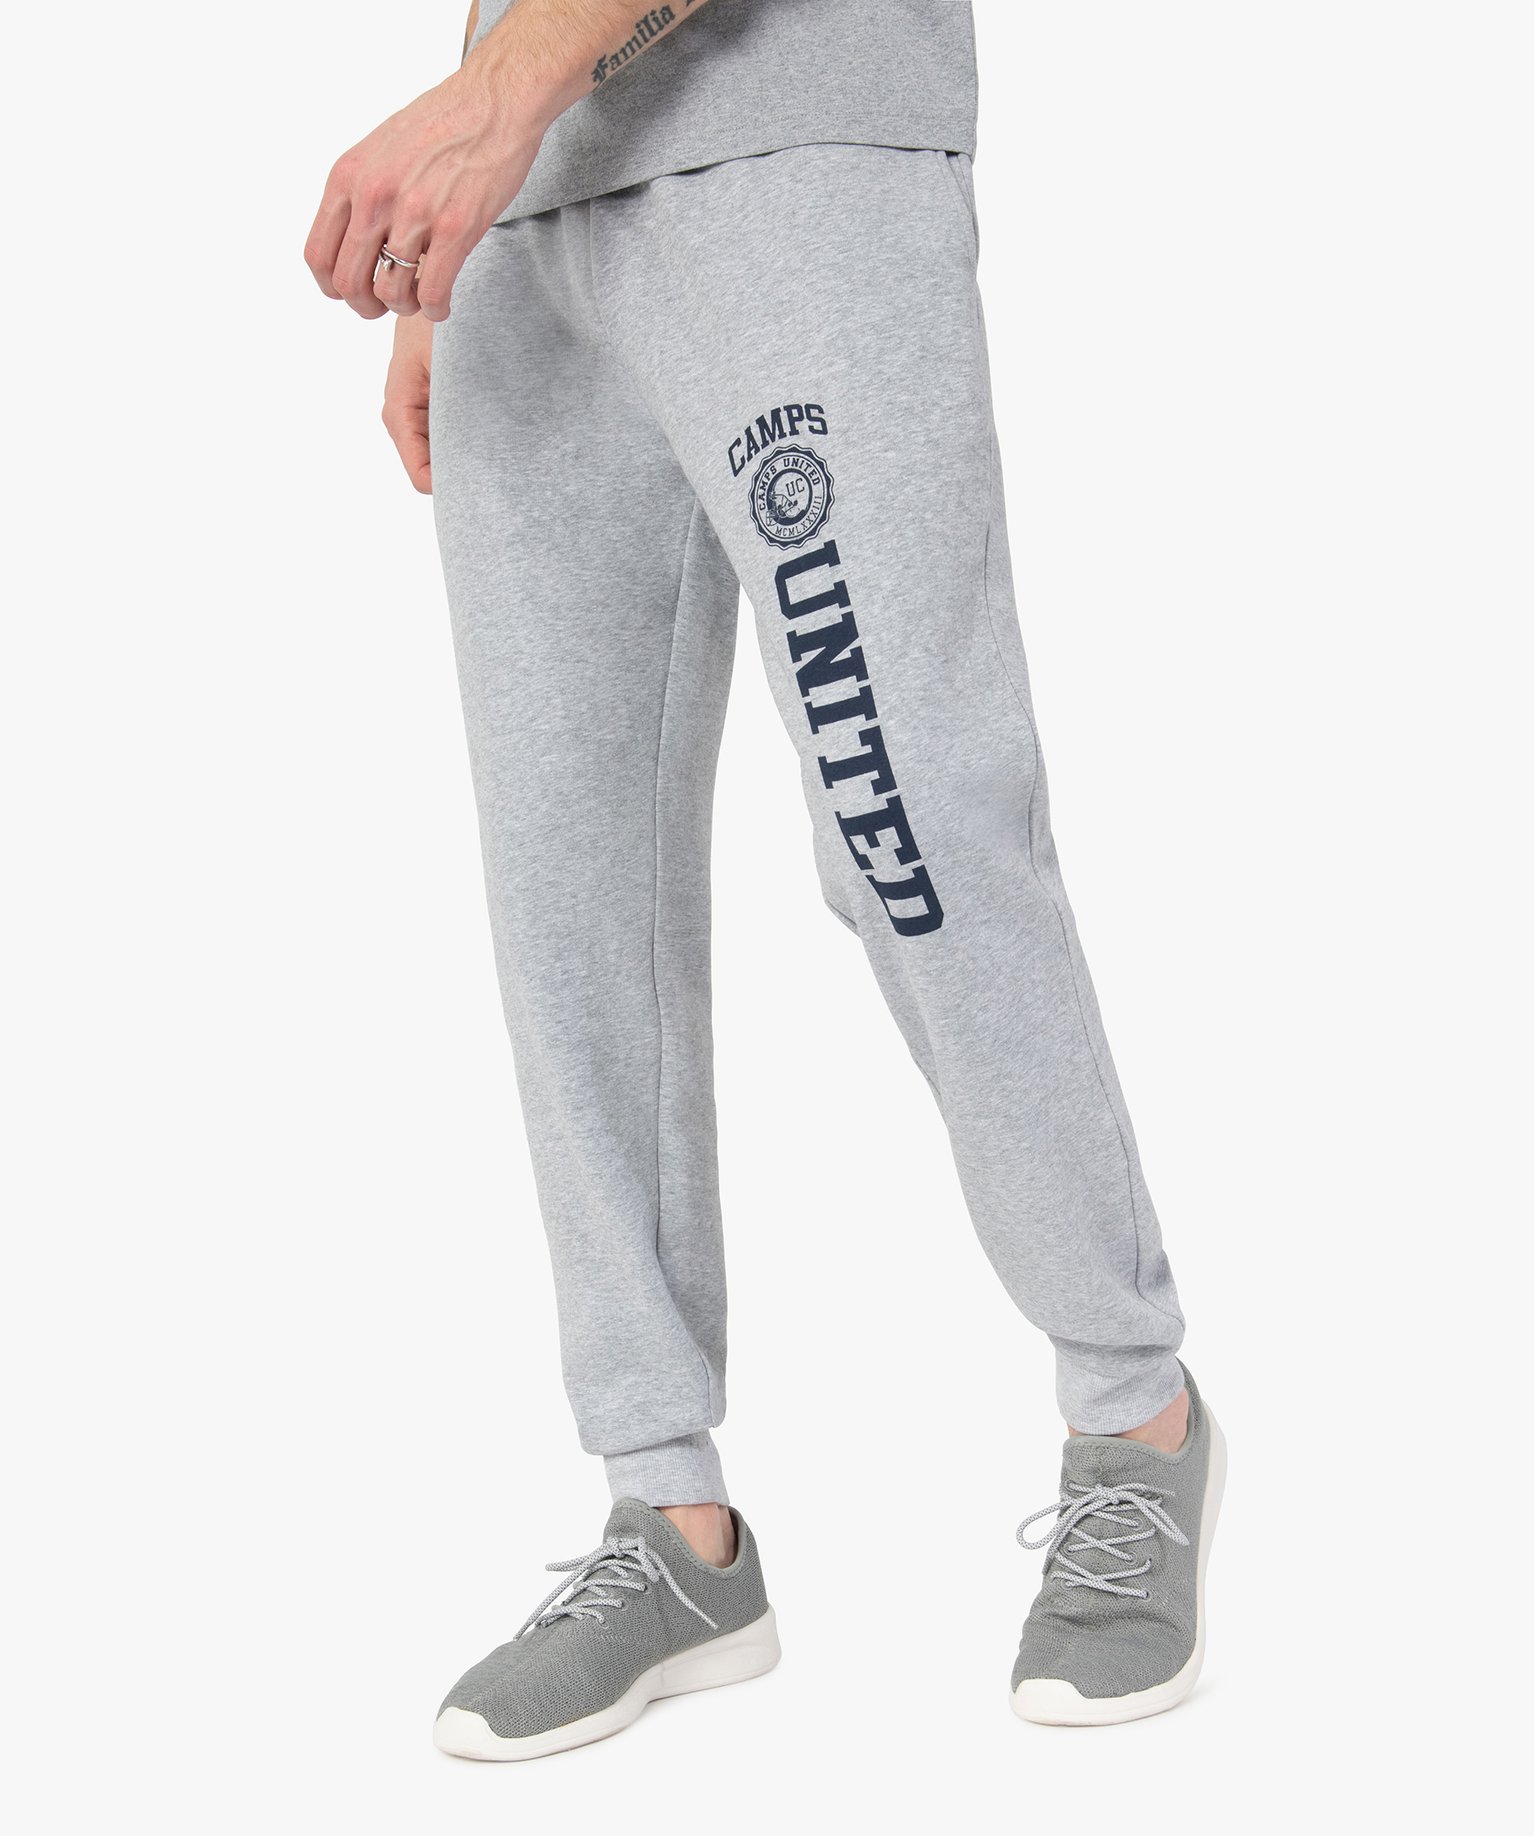 pantalon de jogging homme avec inscription - camps united gris